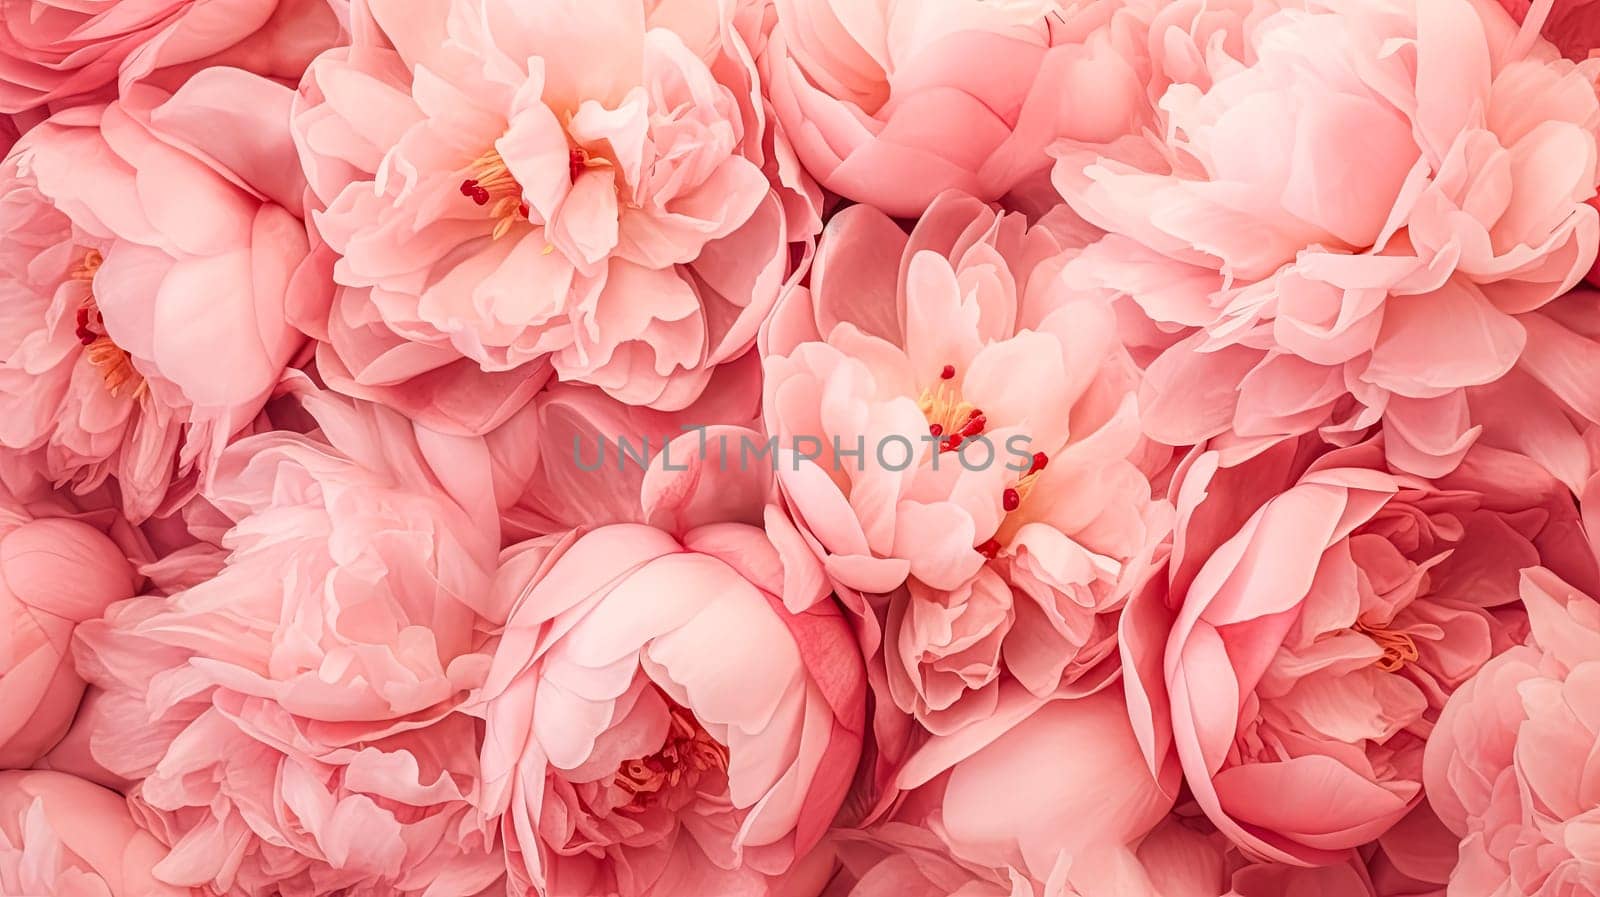 A close up of pink flower petals. by Alla_Morozova93